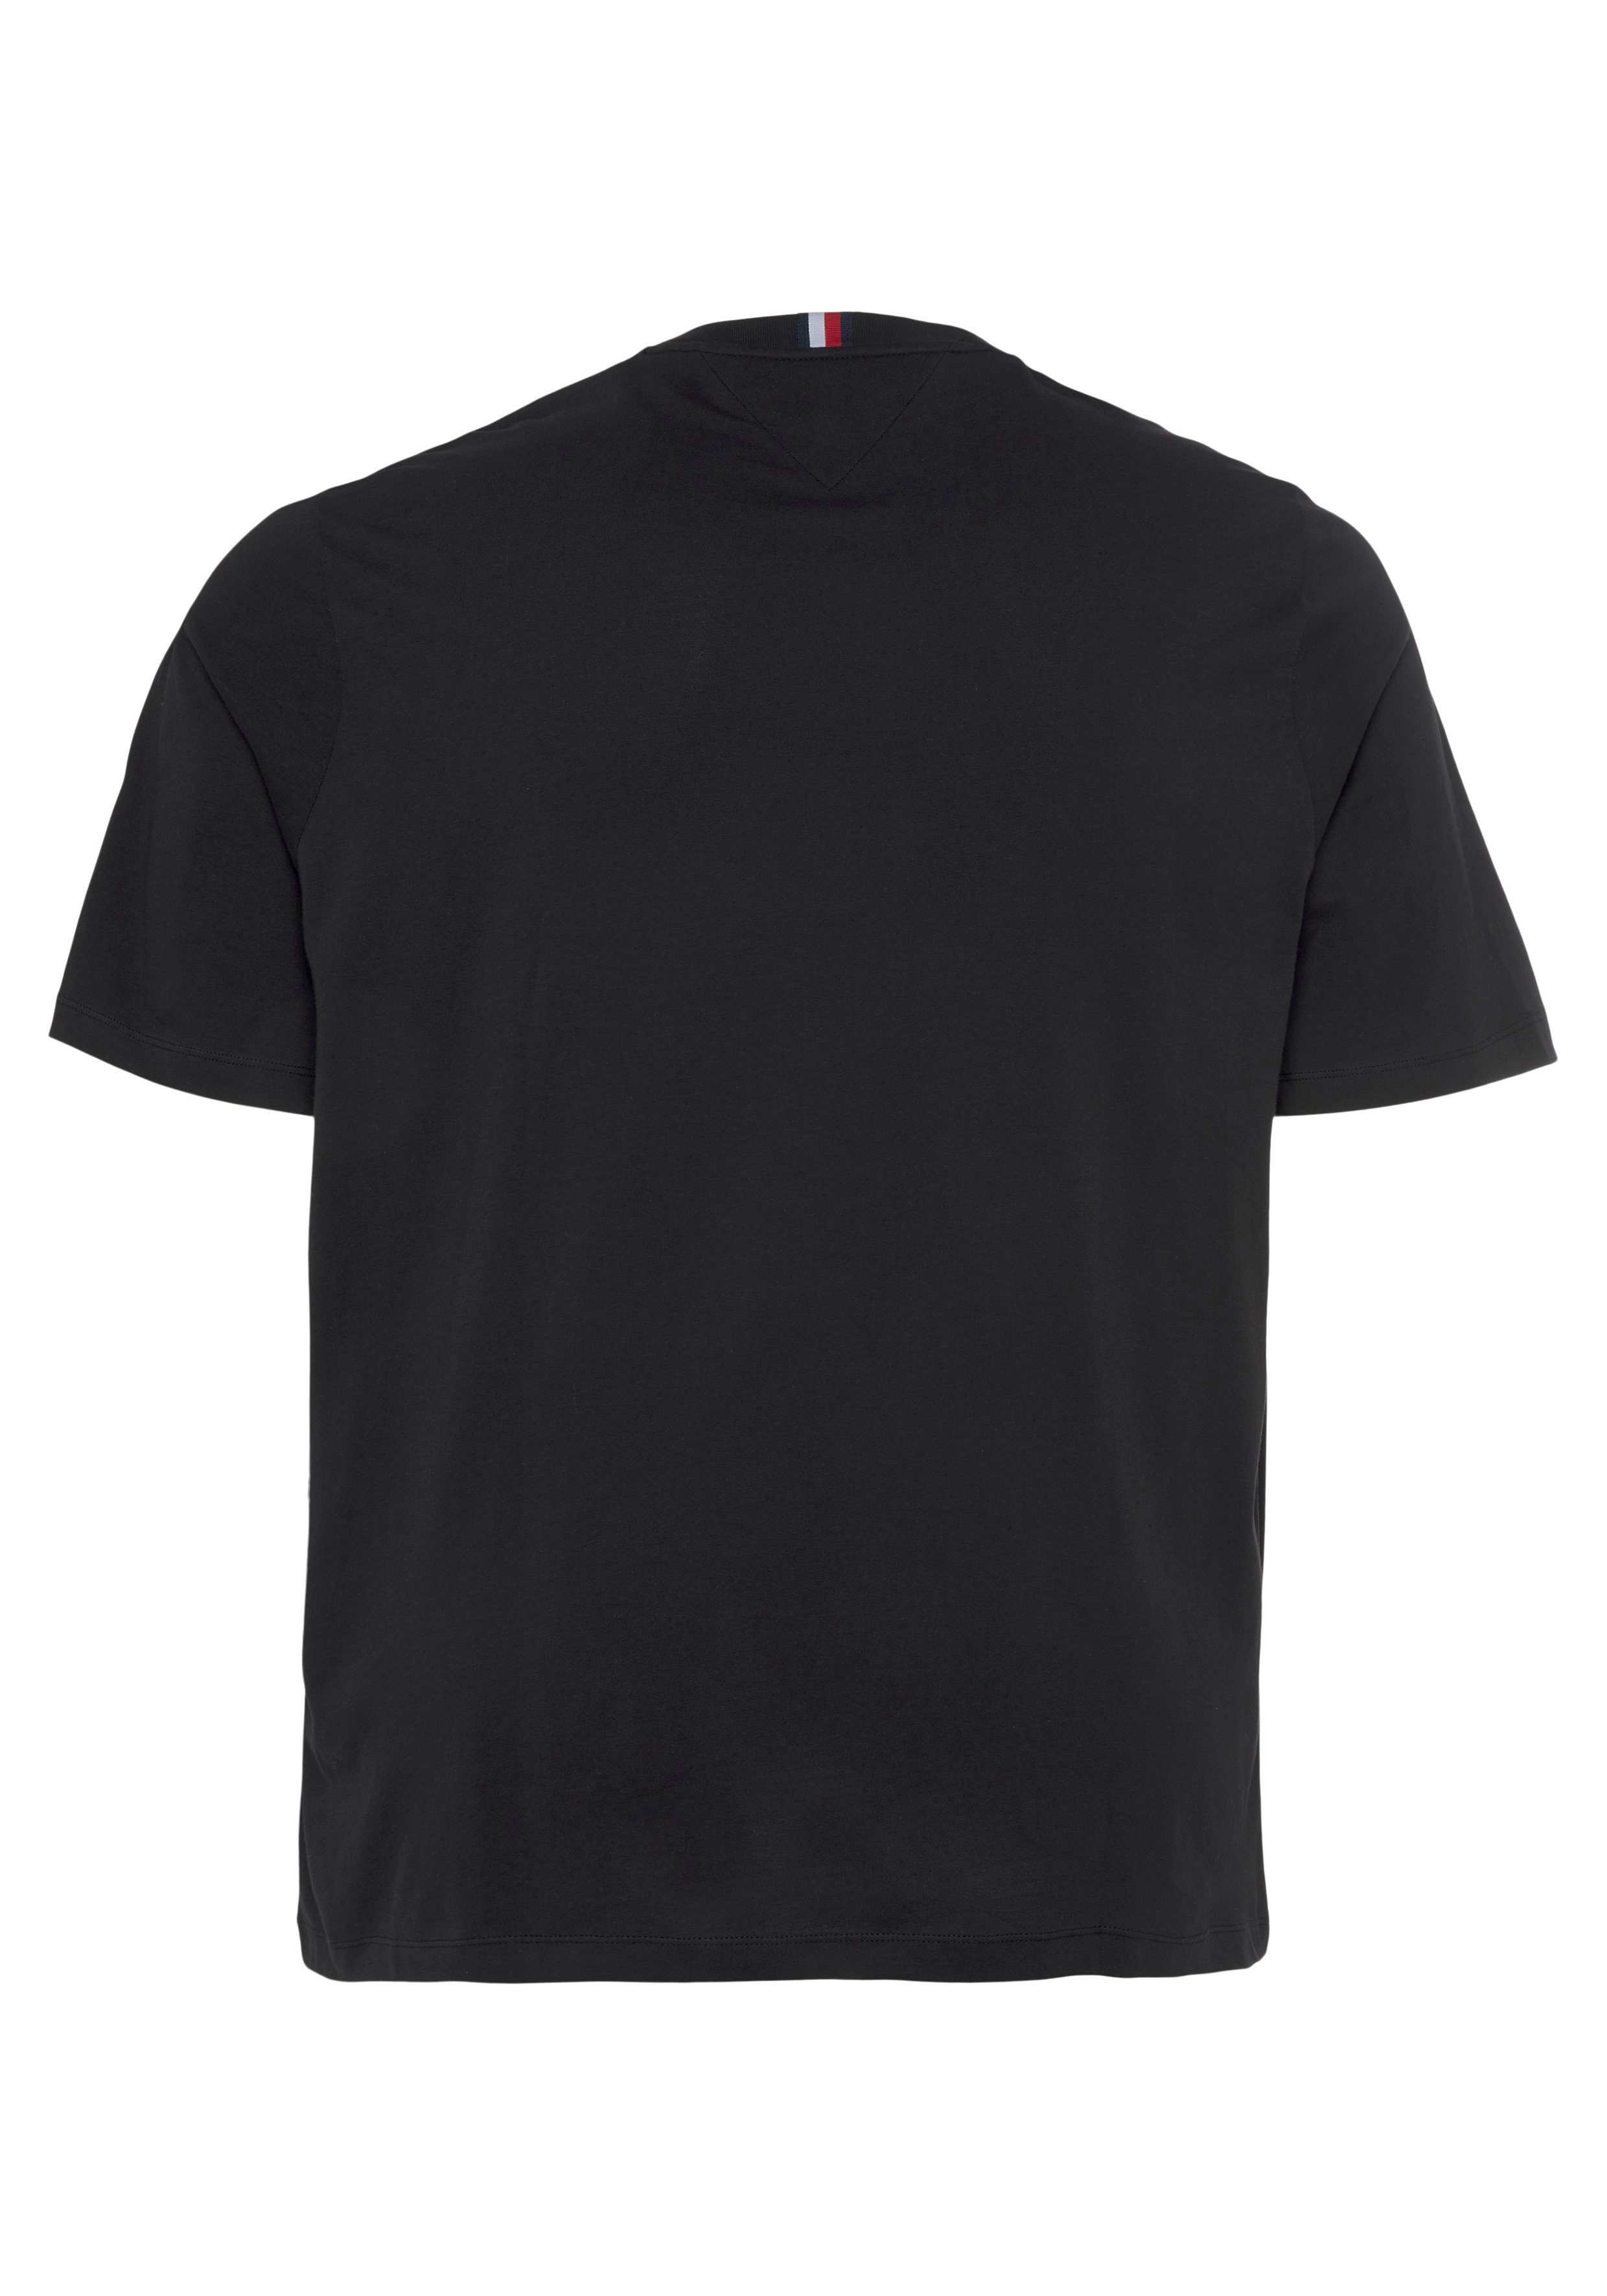 Hilfiger BT-SHADOW Black & HILFIGER Big TEE-B Tommy Tall REG T-Shirt